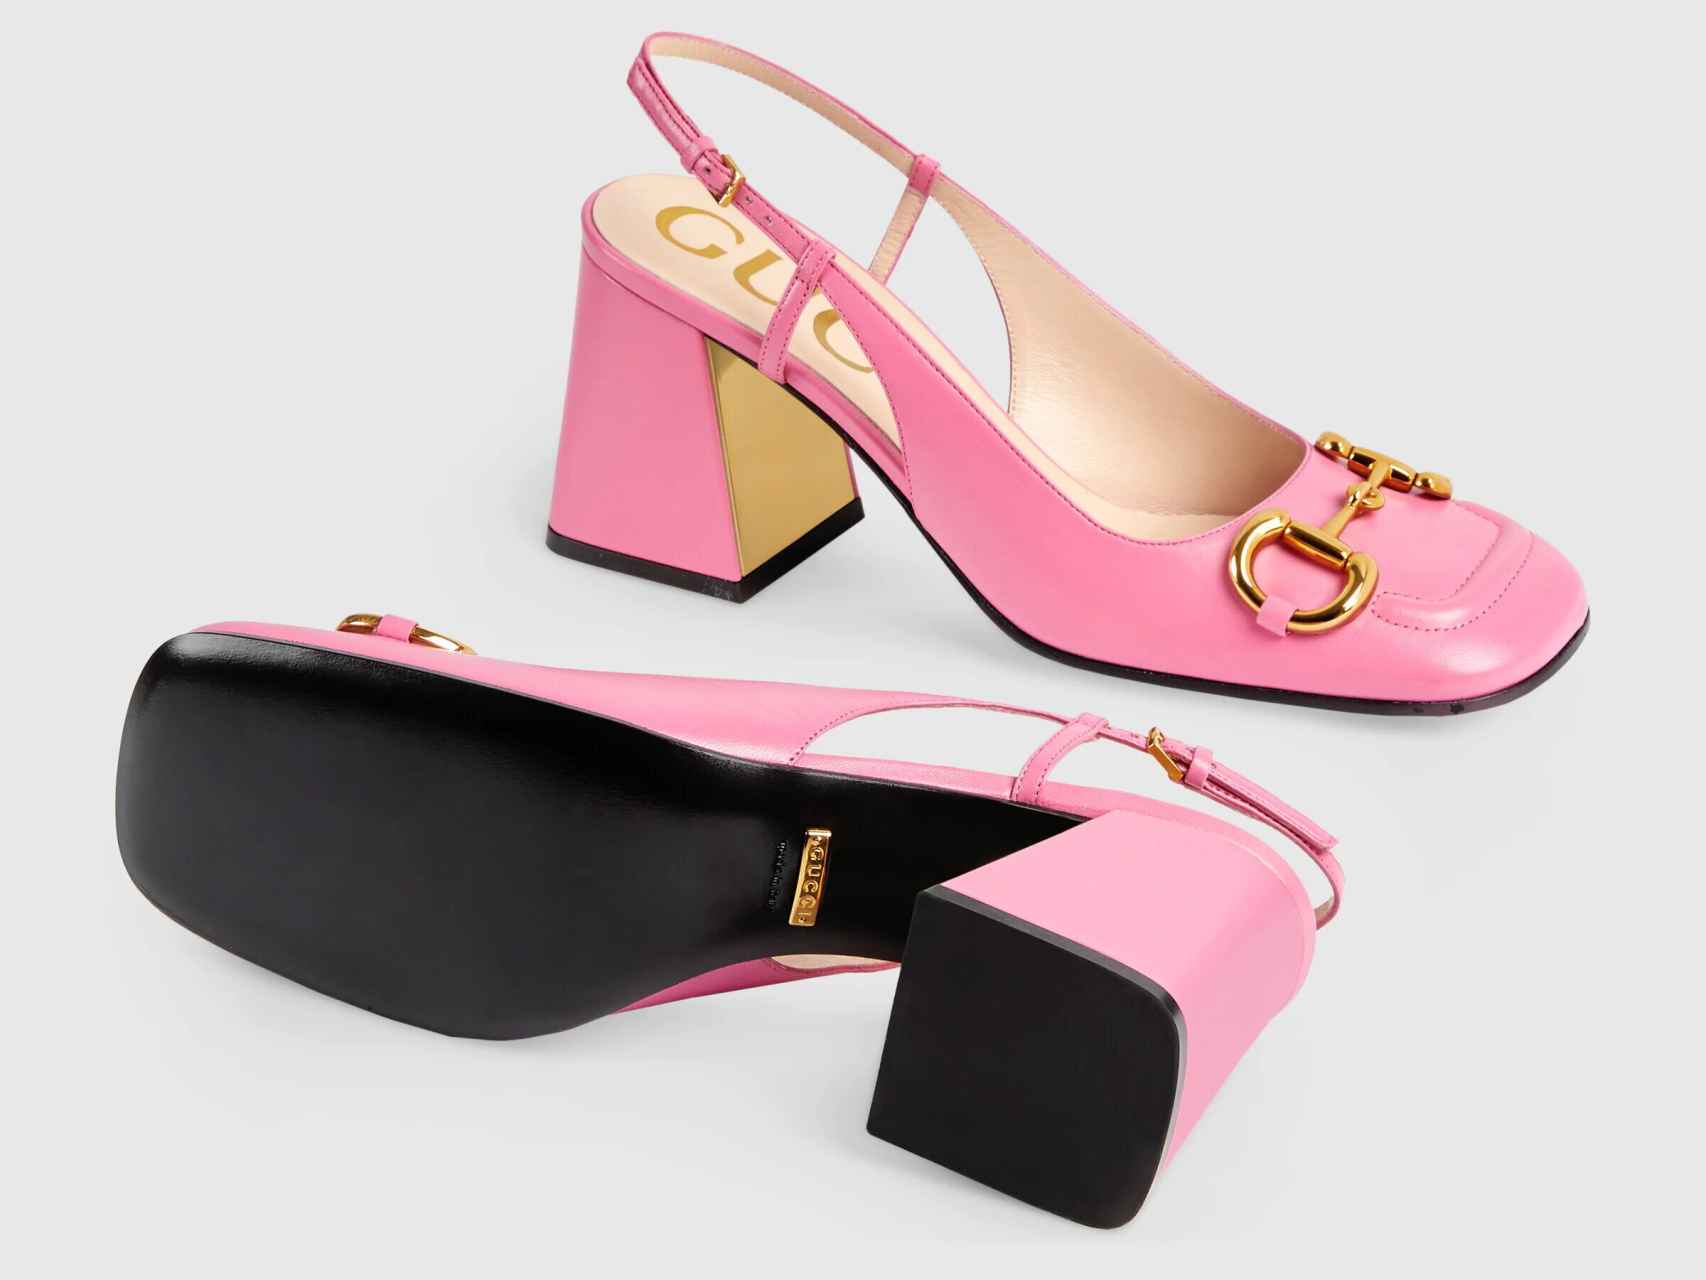 La versión rosa de los zapatos de Gucci.